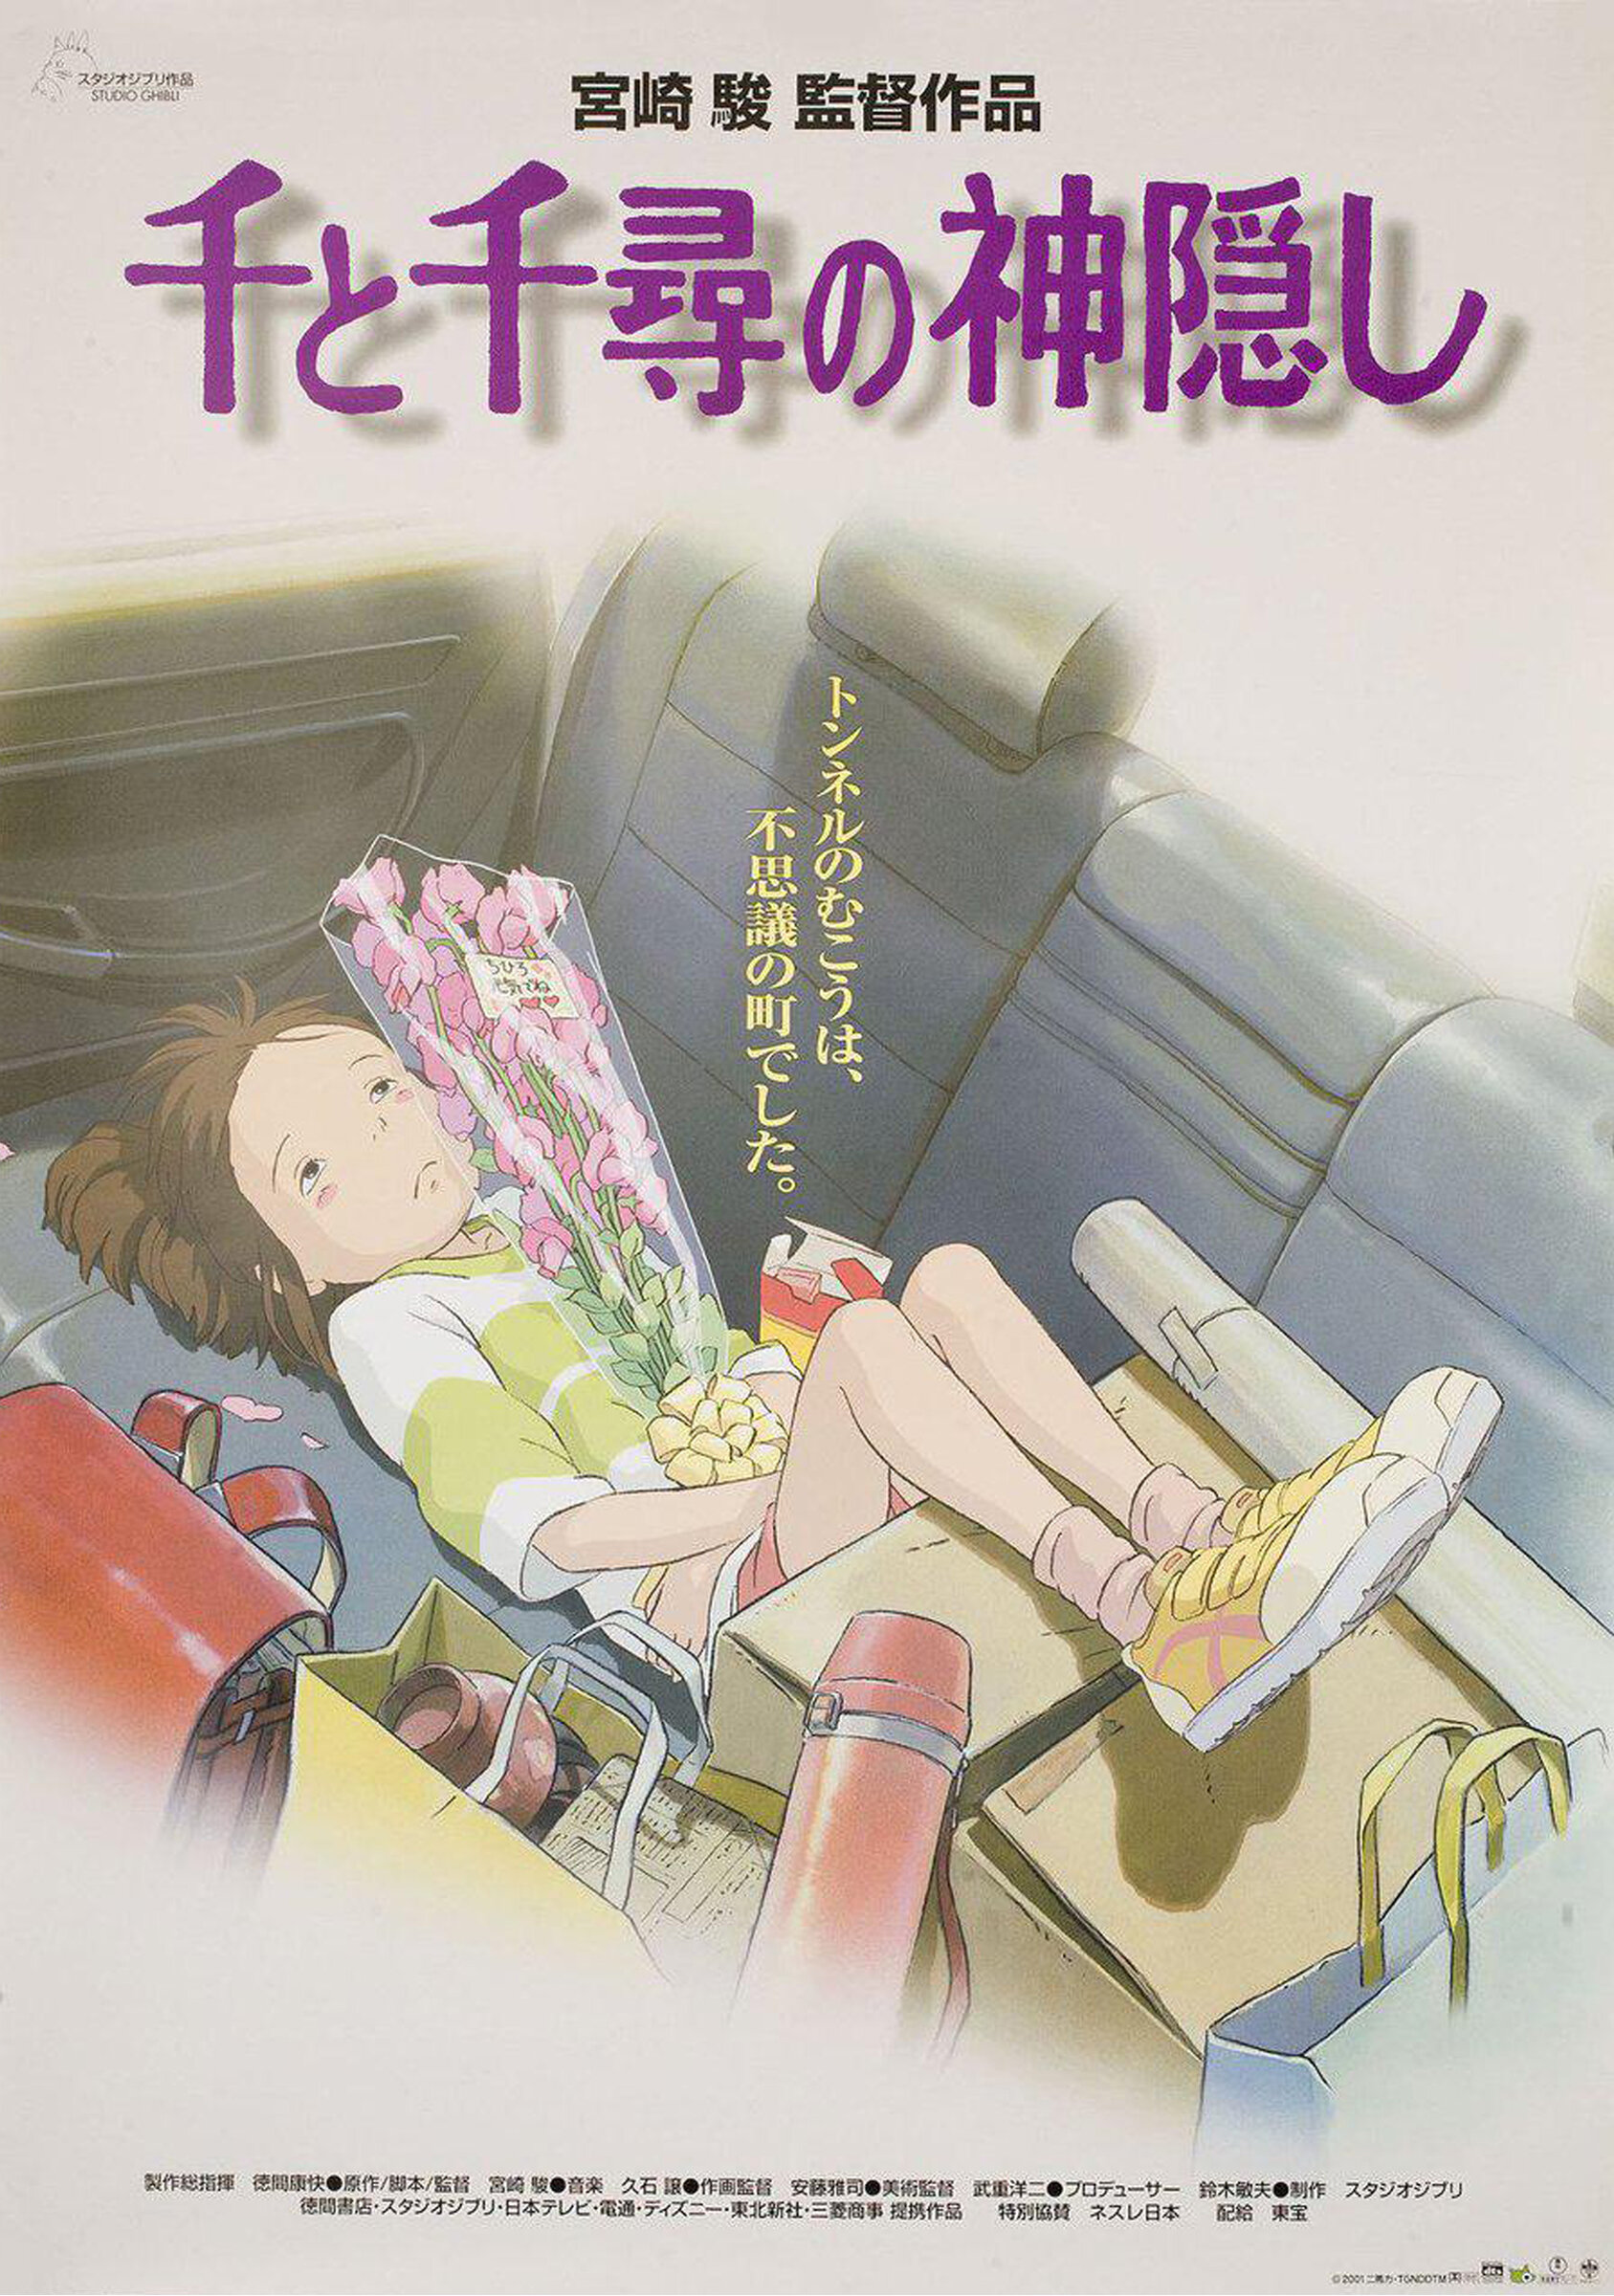  Spirited Away (2001), Japanese Movie Poster Source:  Chairish  